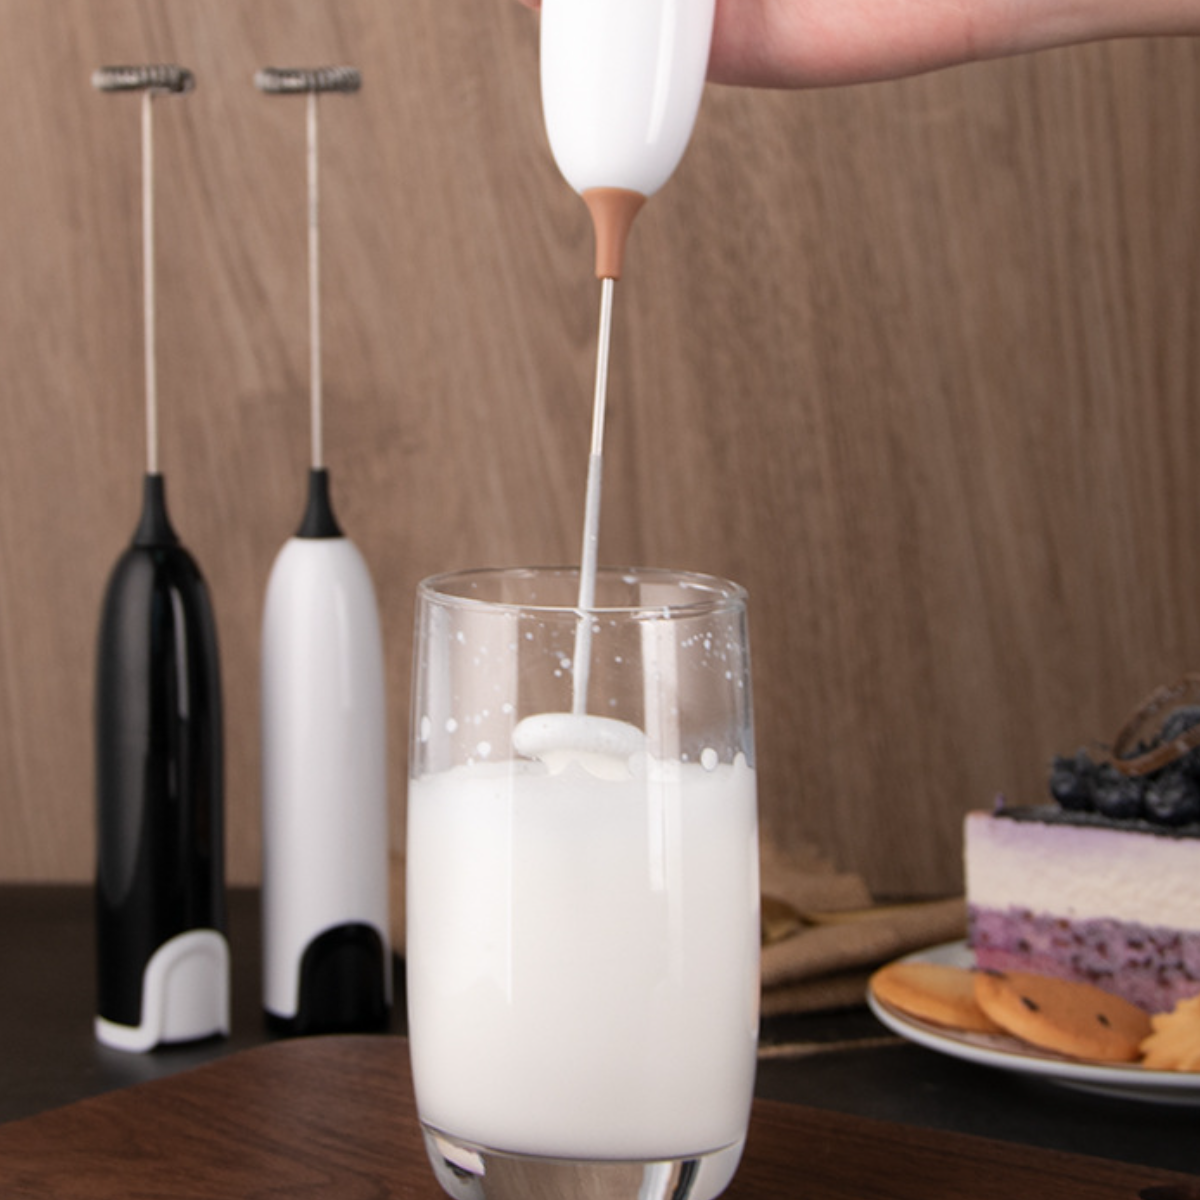 Milchaufschäumer, One-Touch-Bedienung, und Abnehmbar Reinigen Milchaufschäumer: Schwarz Hohe UWOT Leistung, Leicht zu